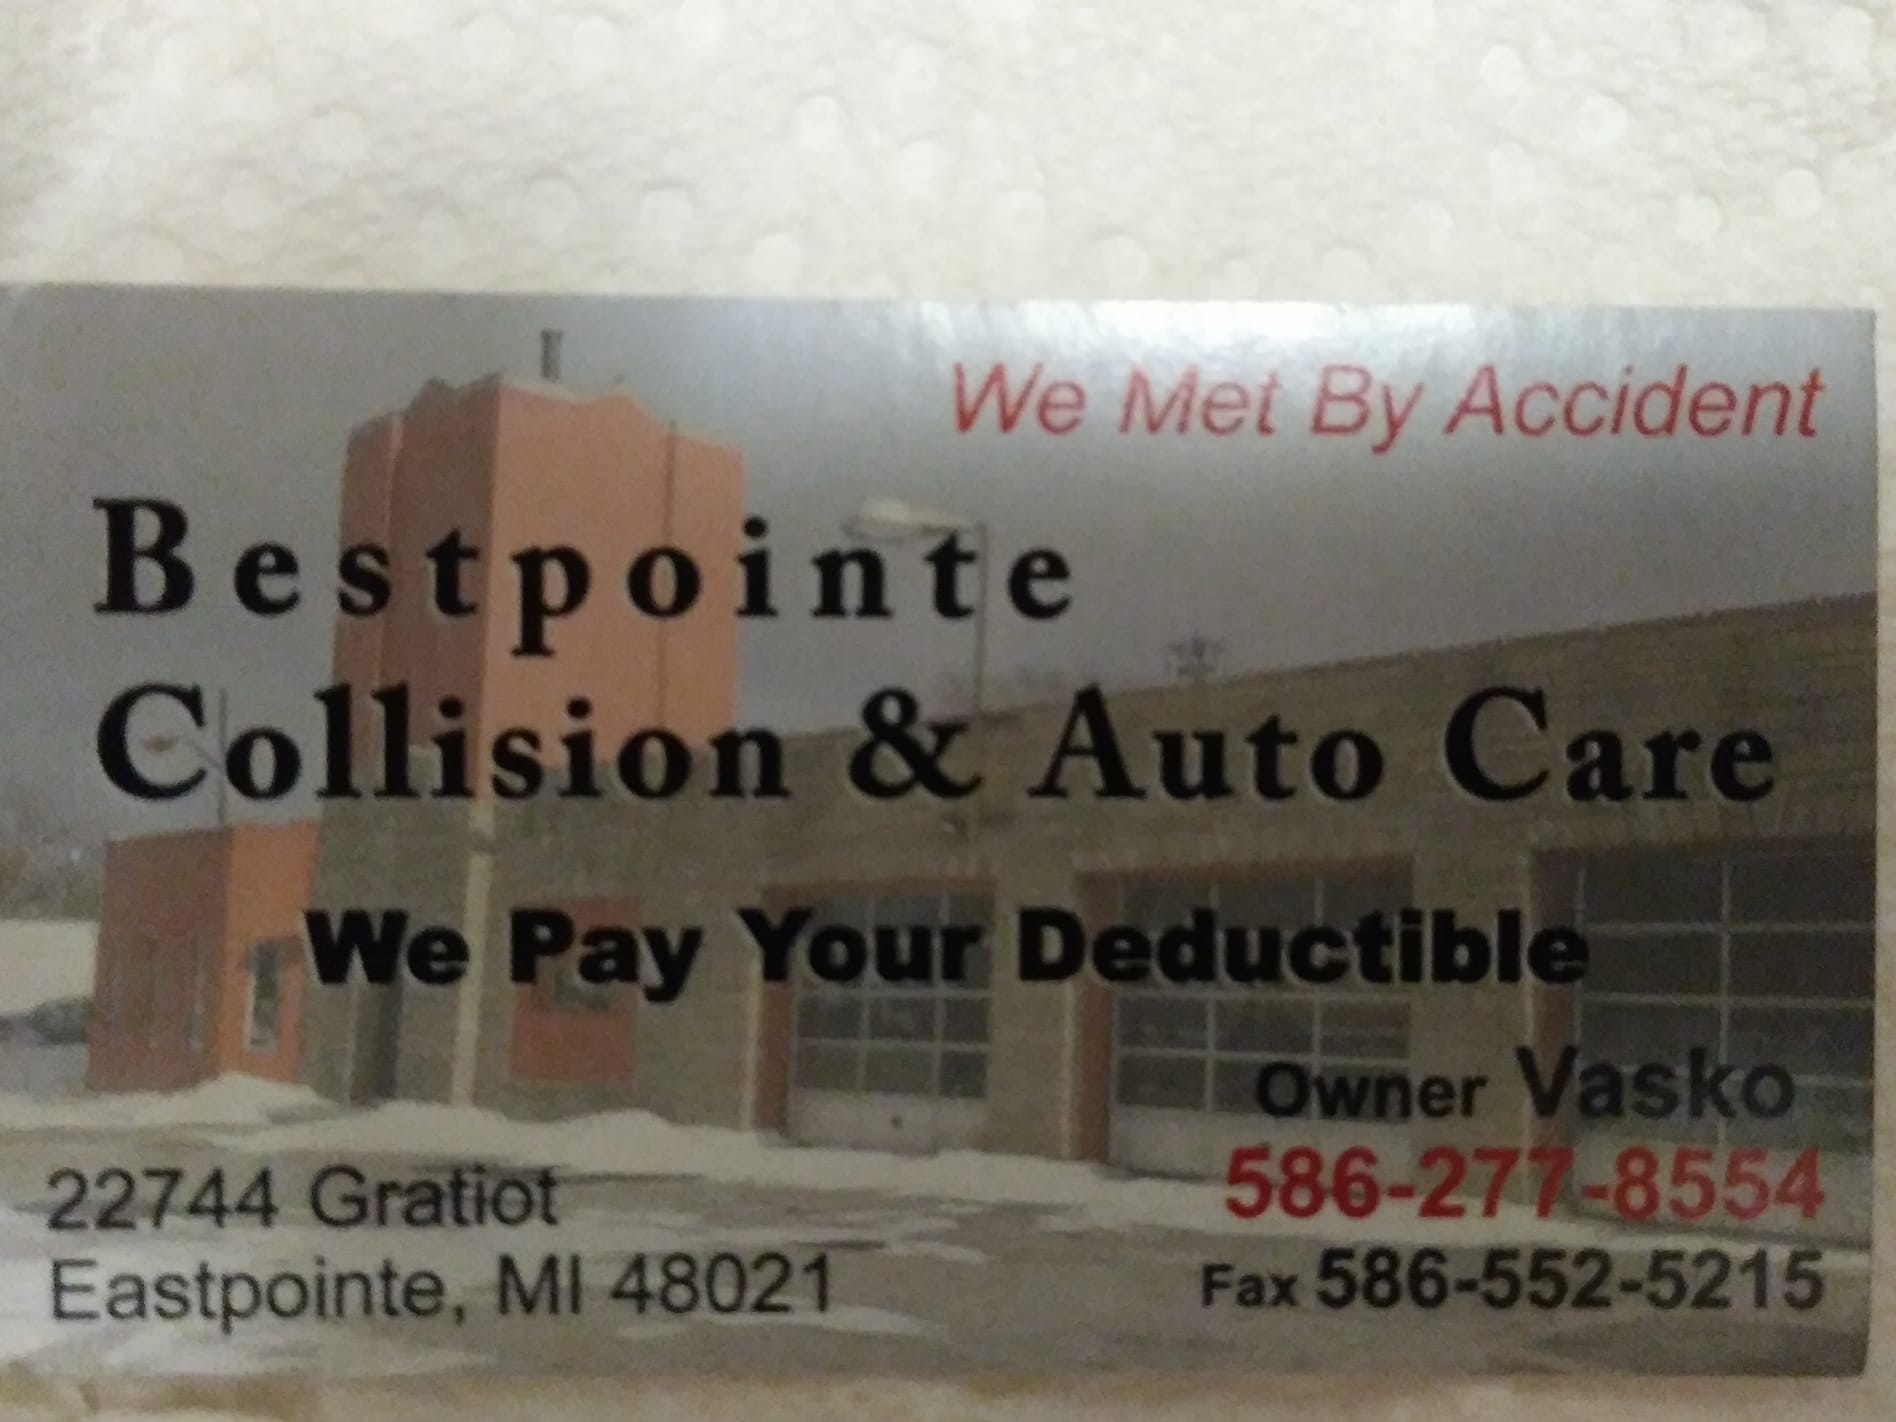 Bestpointe Collision & Auto Care